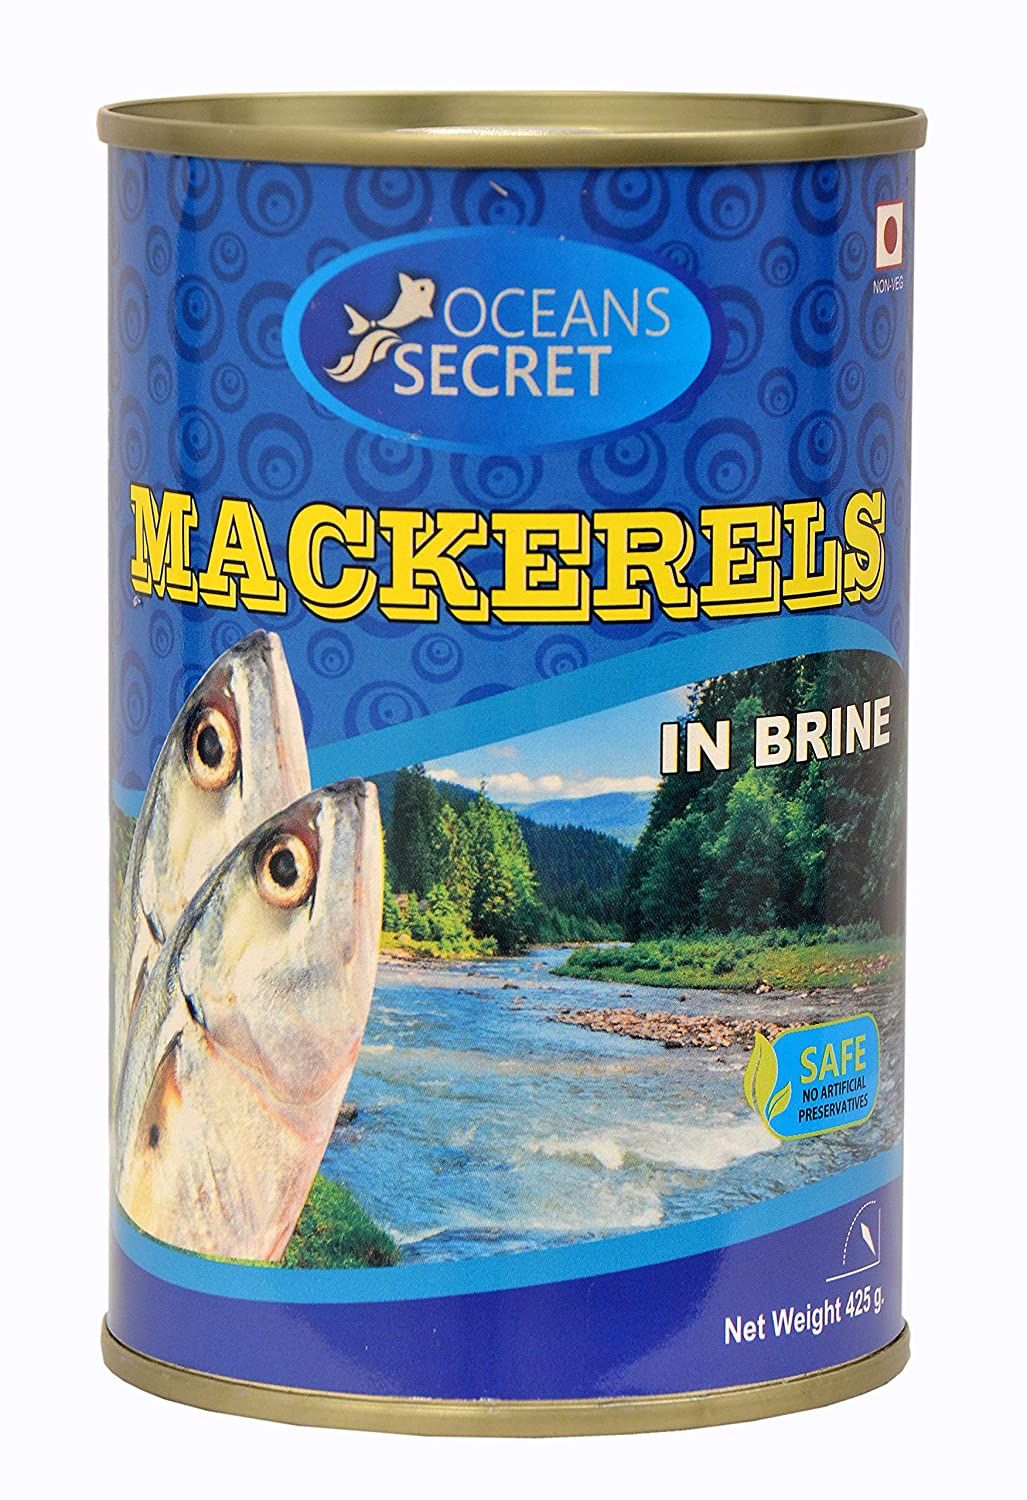 Ocean's Secret Canned Mackerels in Brine Image